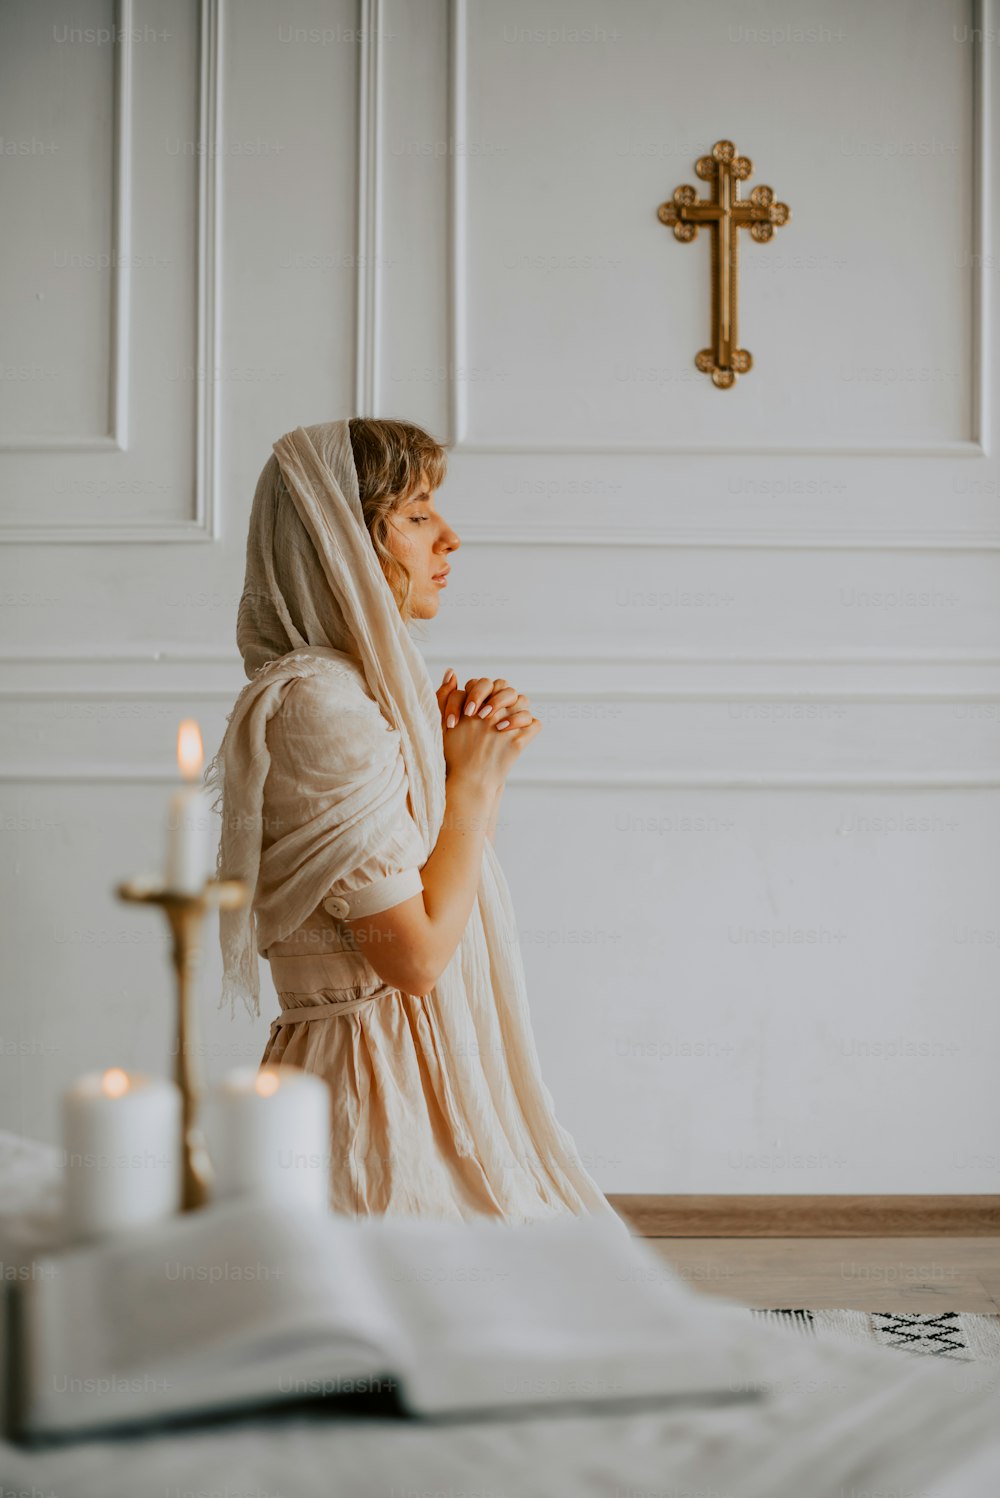 흰 드레스를 입은 여자가 십자가 앞에 무릎을 꿇고 있다